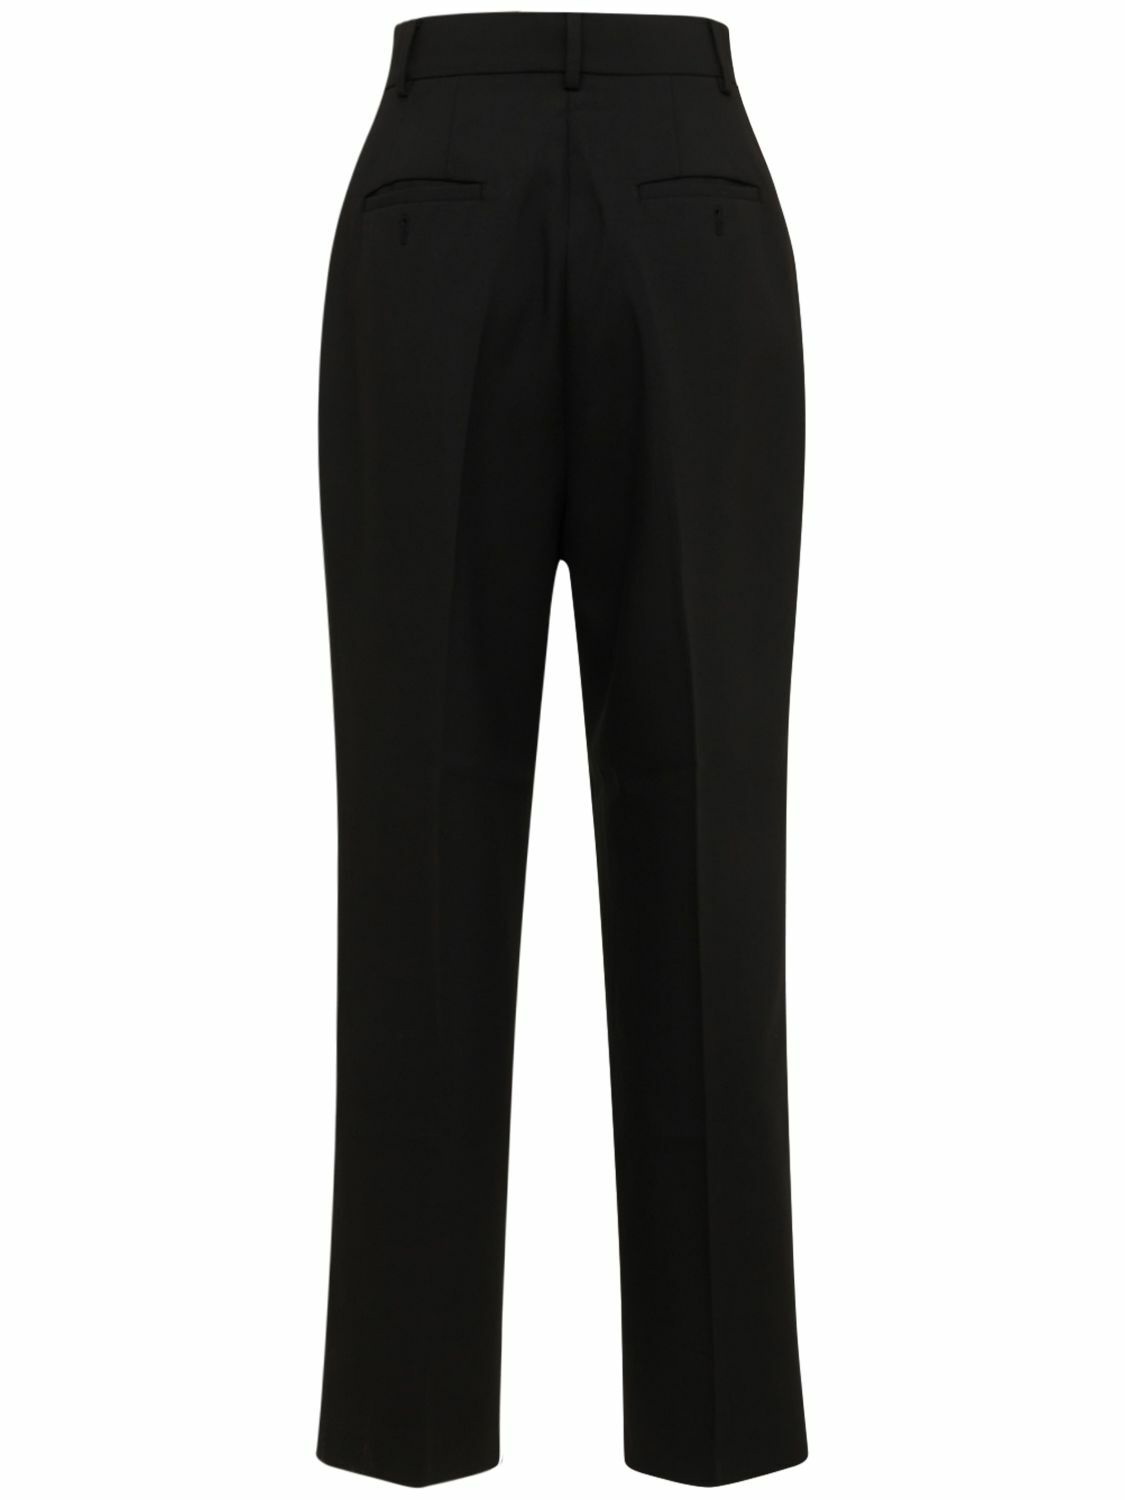 Bea Suit Pants - Black